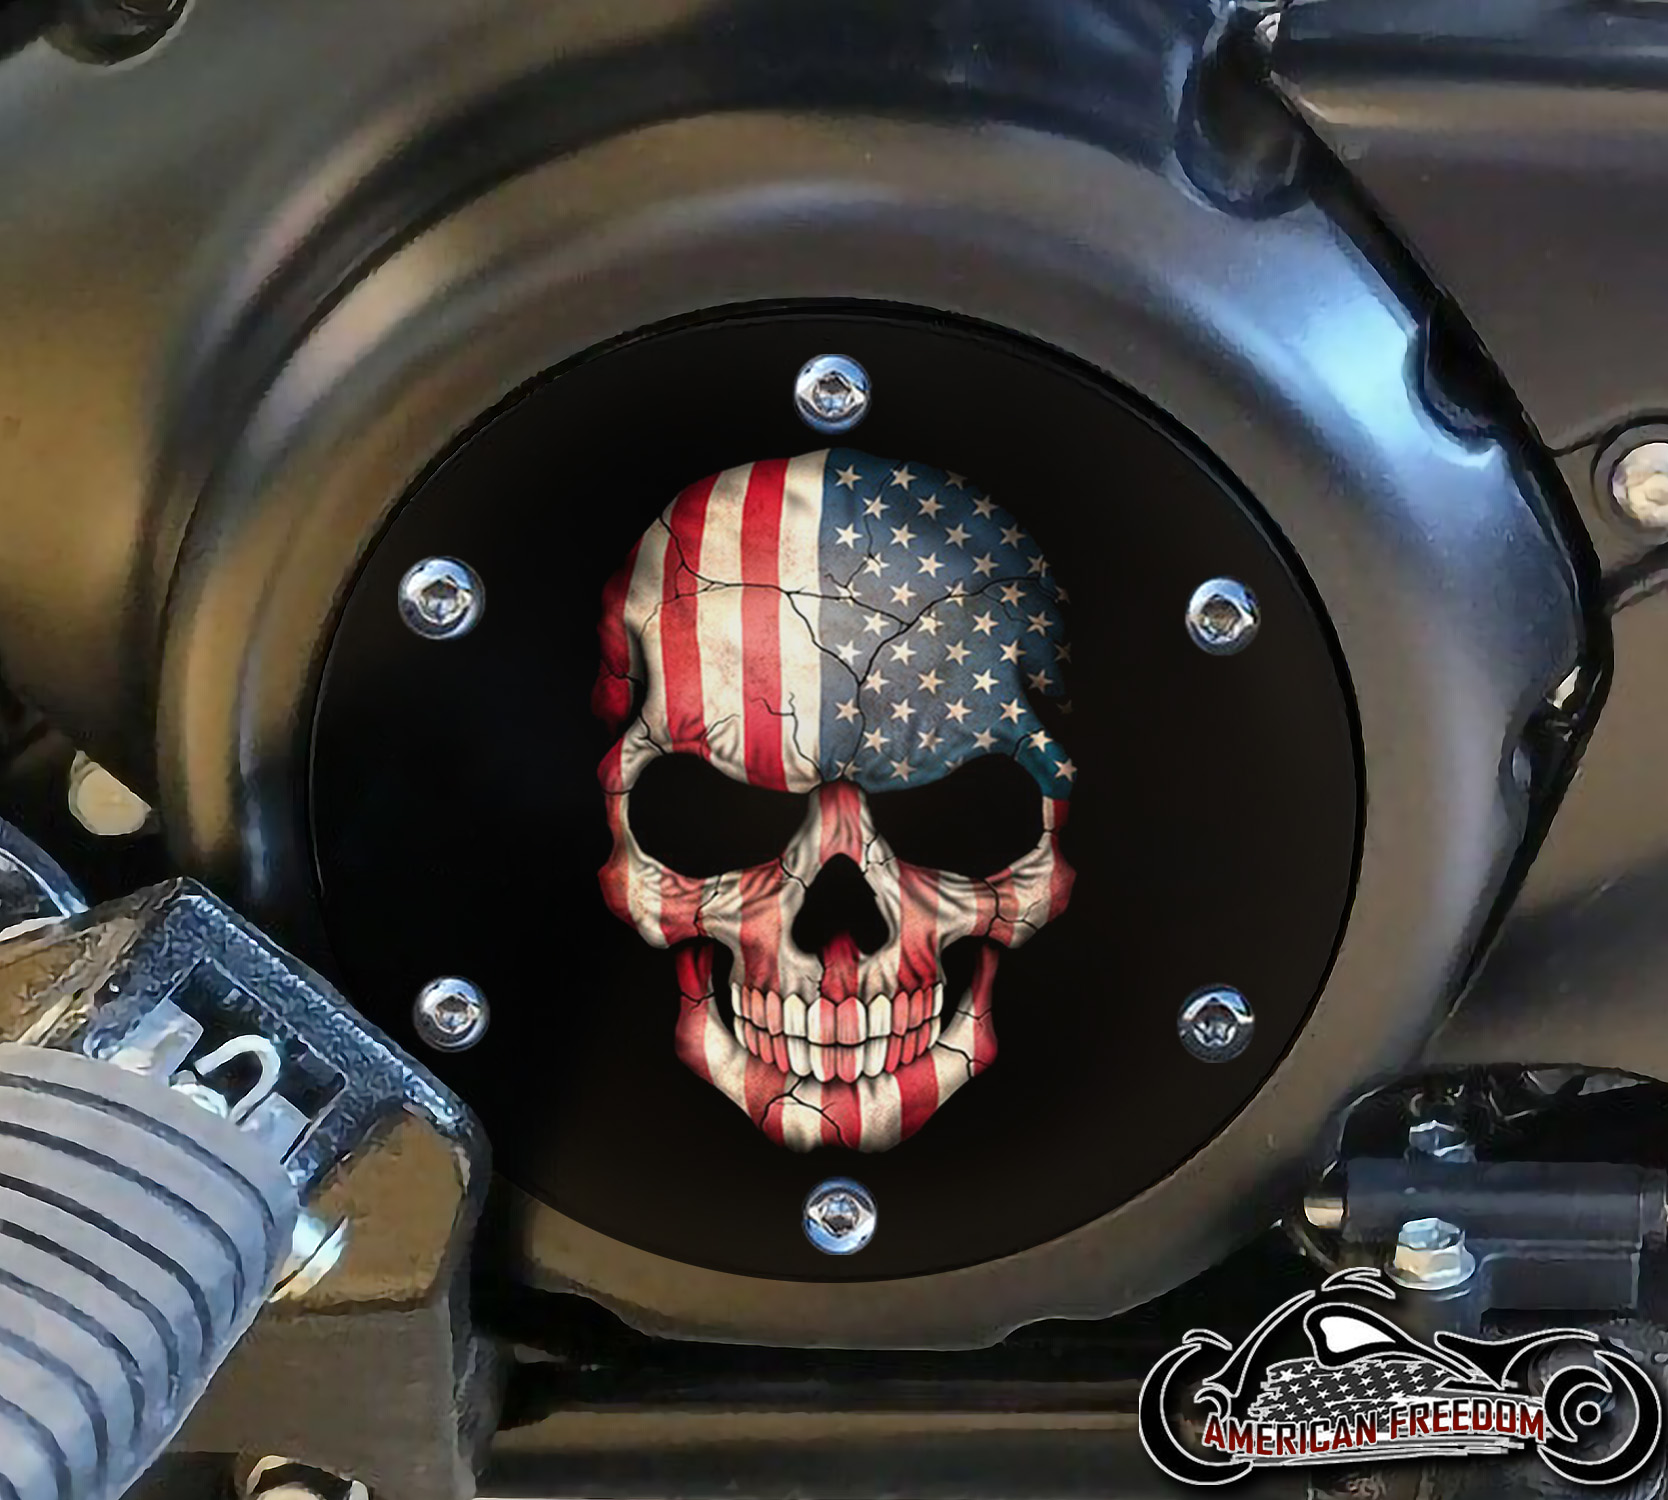 SUZUKI M109R Derby/Engine Cover - Skull Flag